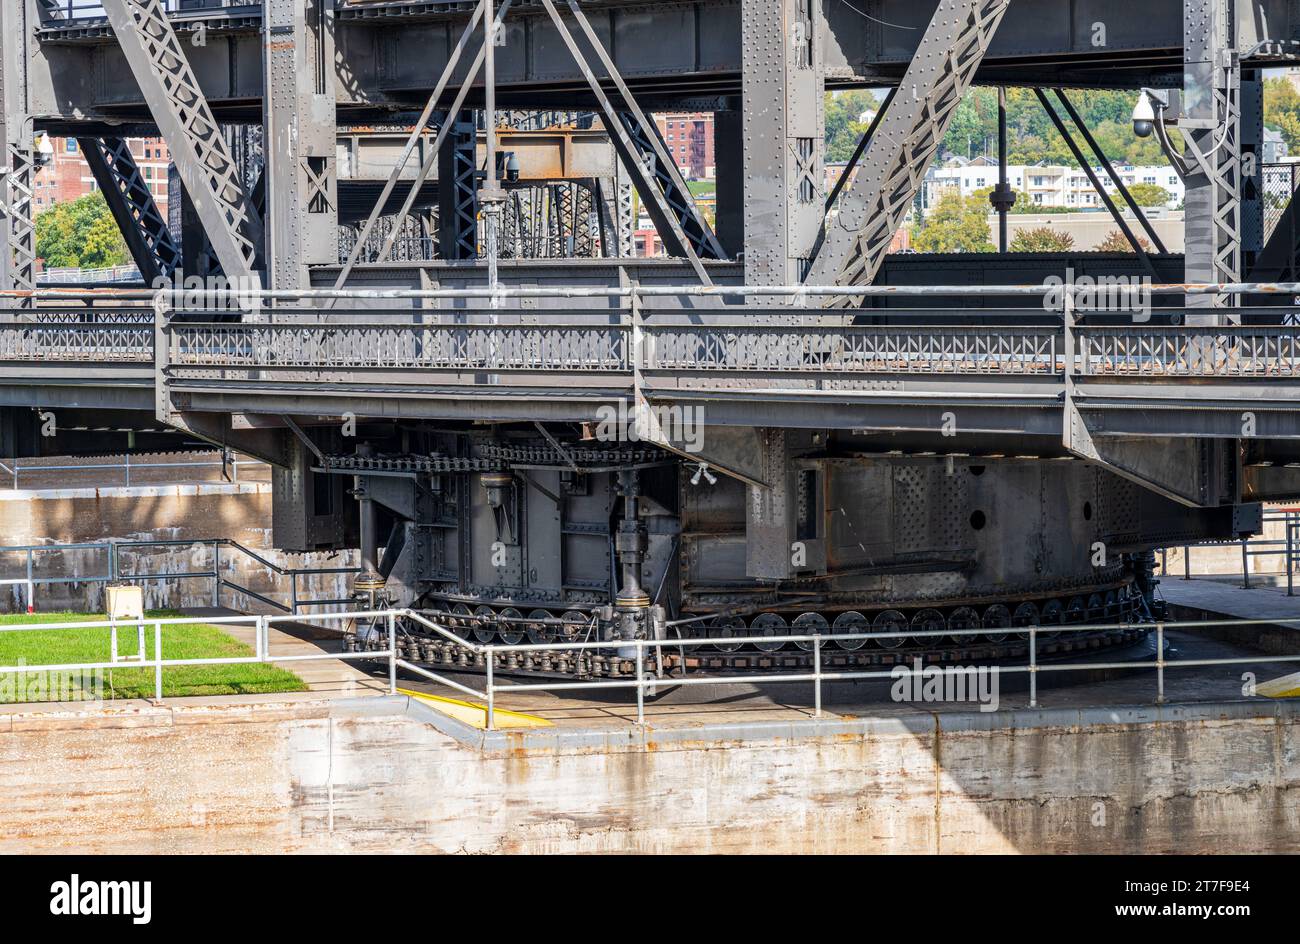 Détail des engrenages sur la travée historique de l'Arsenal ou le pont gouvernemental s'ouvre sur l'écluse et le barrage n ° 15 à Davenport, Iowa Banque D'Images